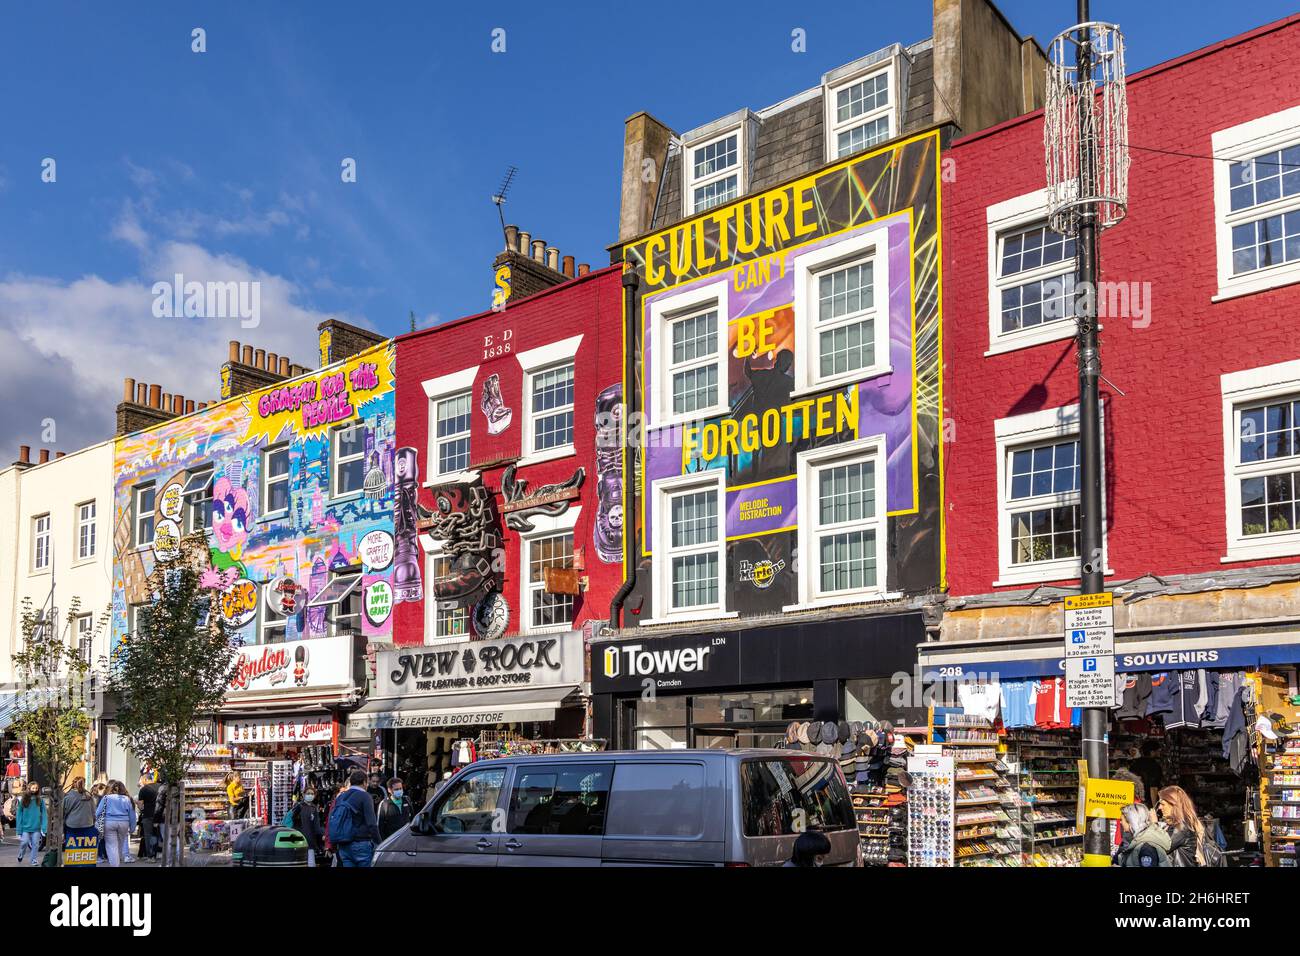 Boutiques décorées en couleurs le long de Camden High Street, Camden Town, nord de Londres, angleterre. Banque D'Images